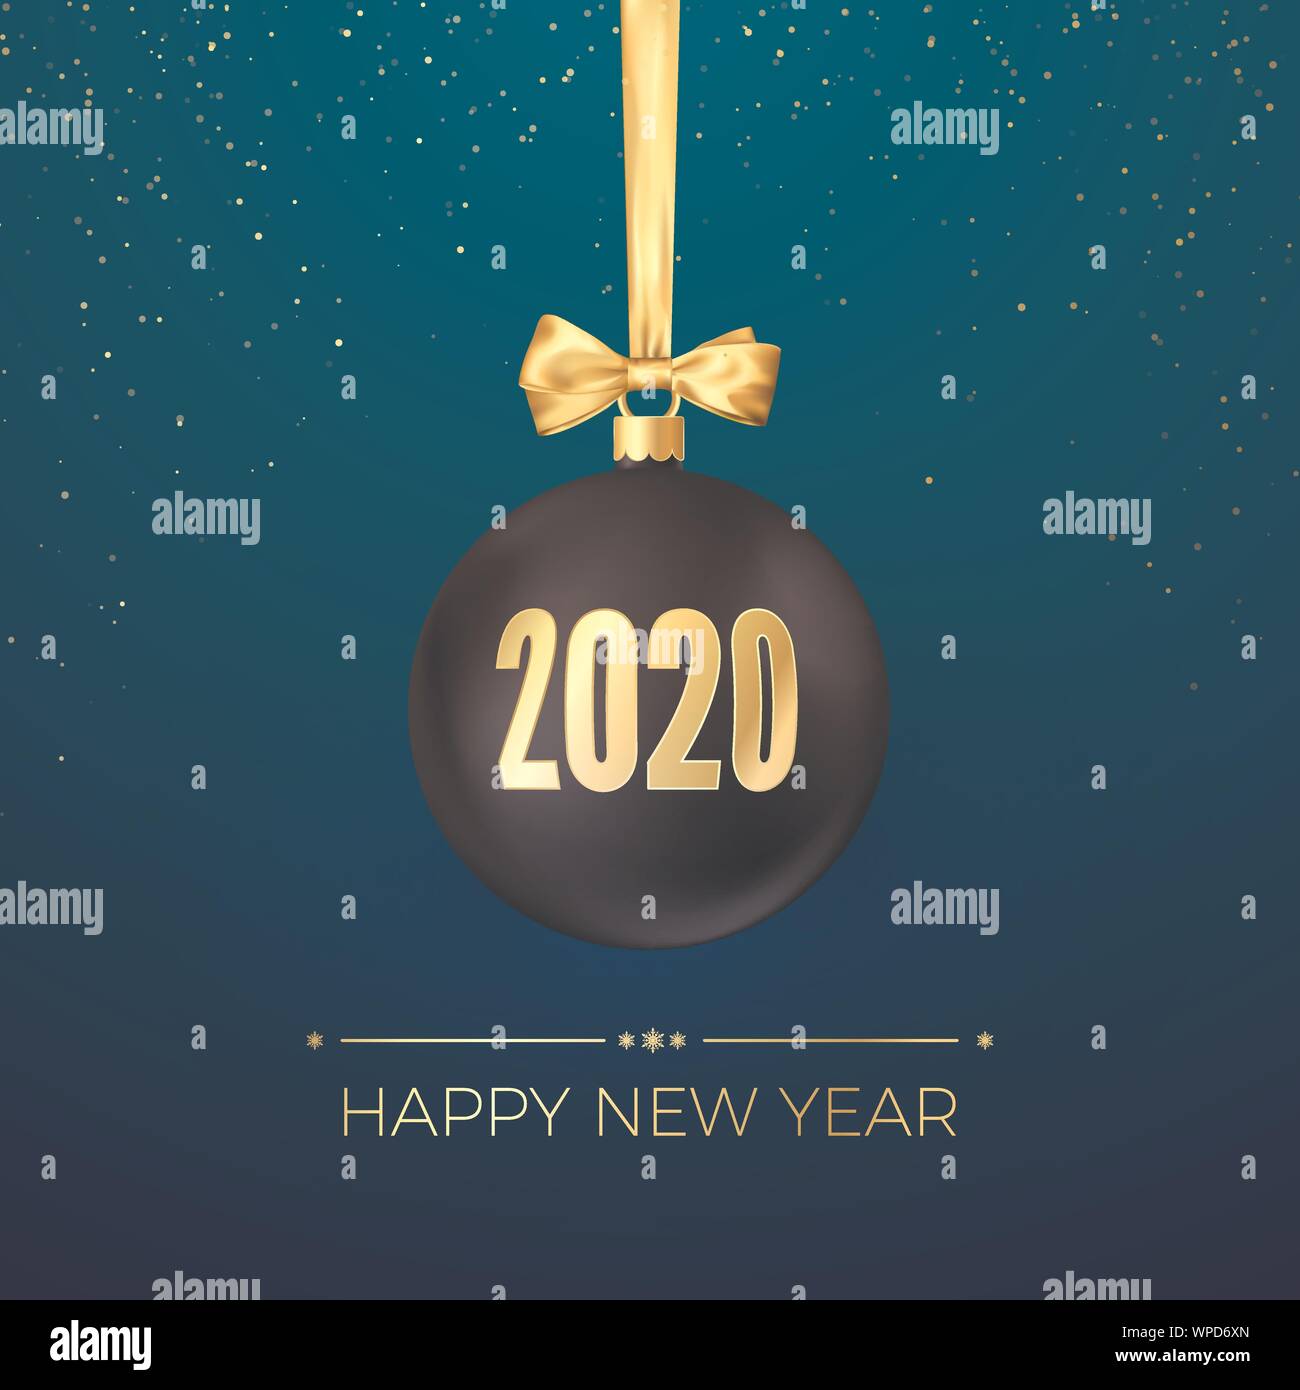 Frohes Neues Jahr 2020. Grußkarte mit Black Christmas Ball mit Goldband und gold Zahlen 2020 auf Sie. Neues Jahr und Weihnachten Dekoration eleme Stock Vektor